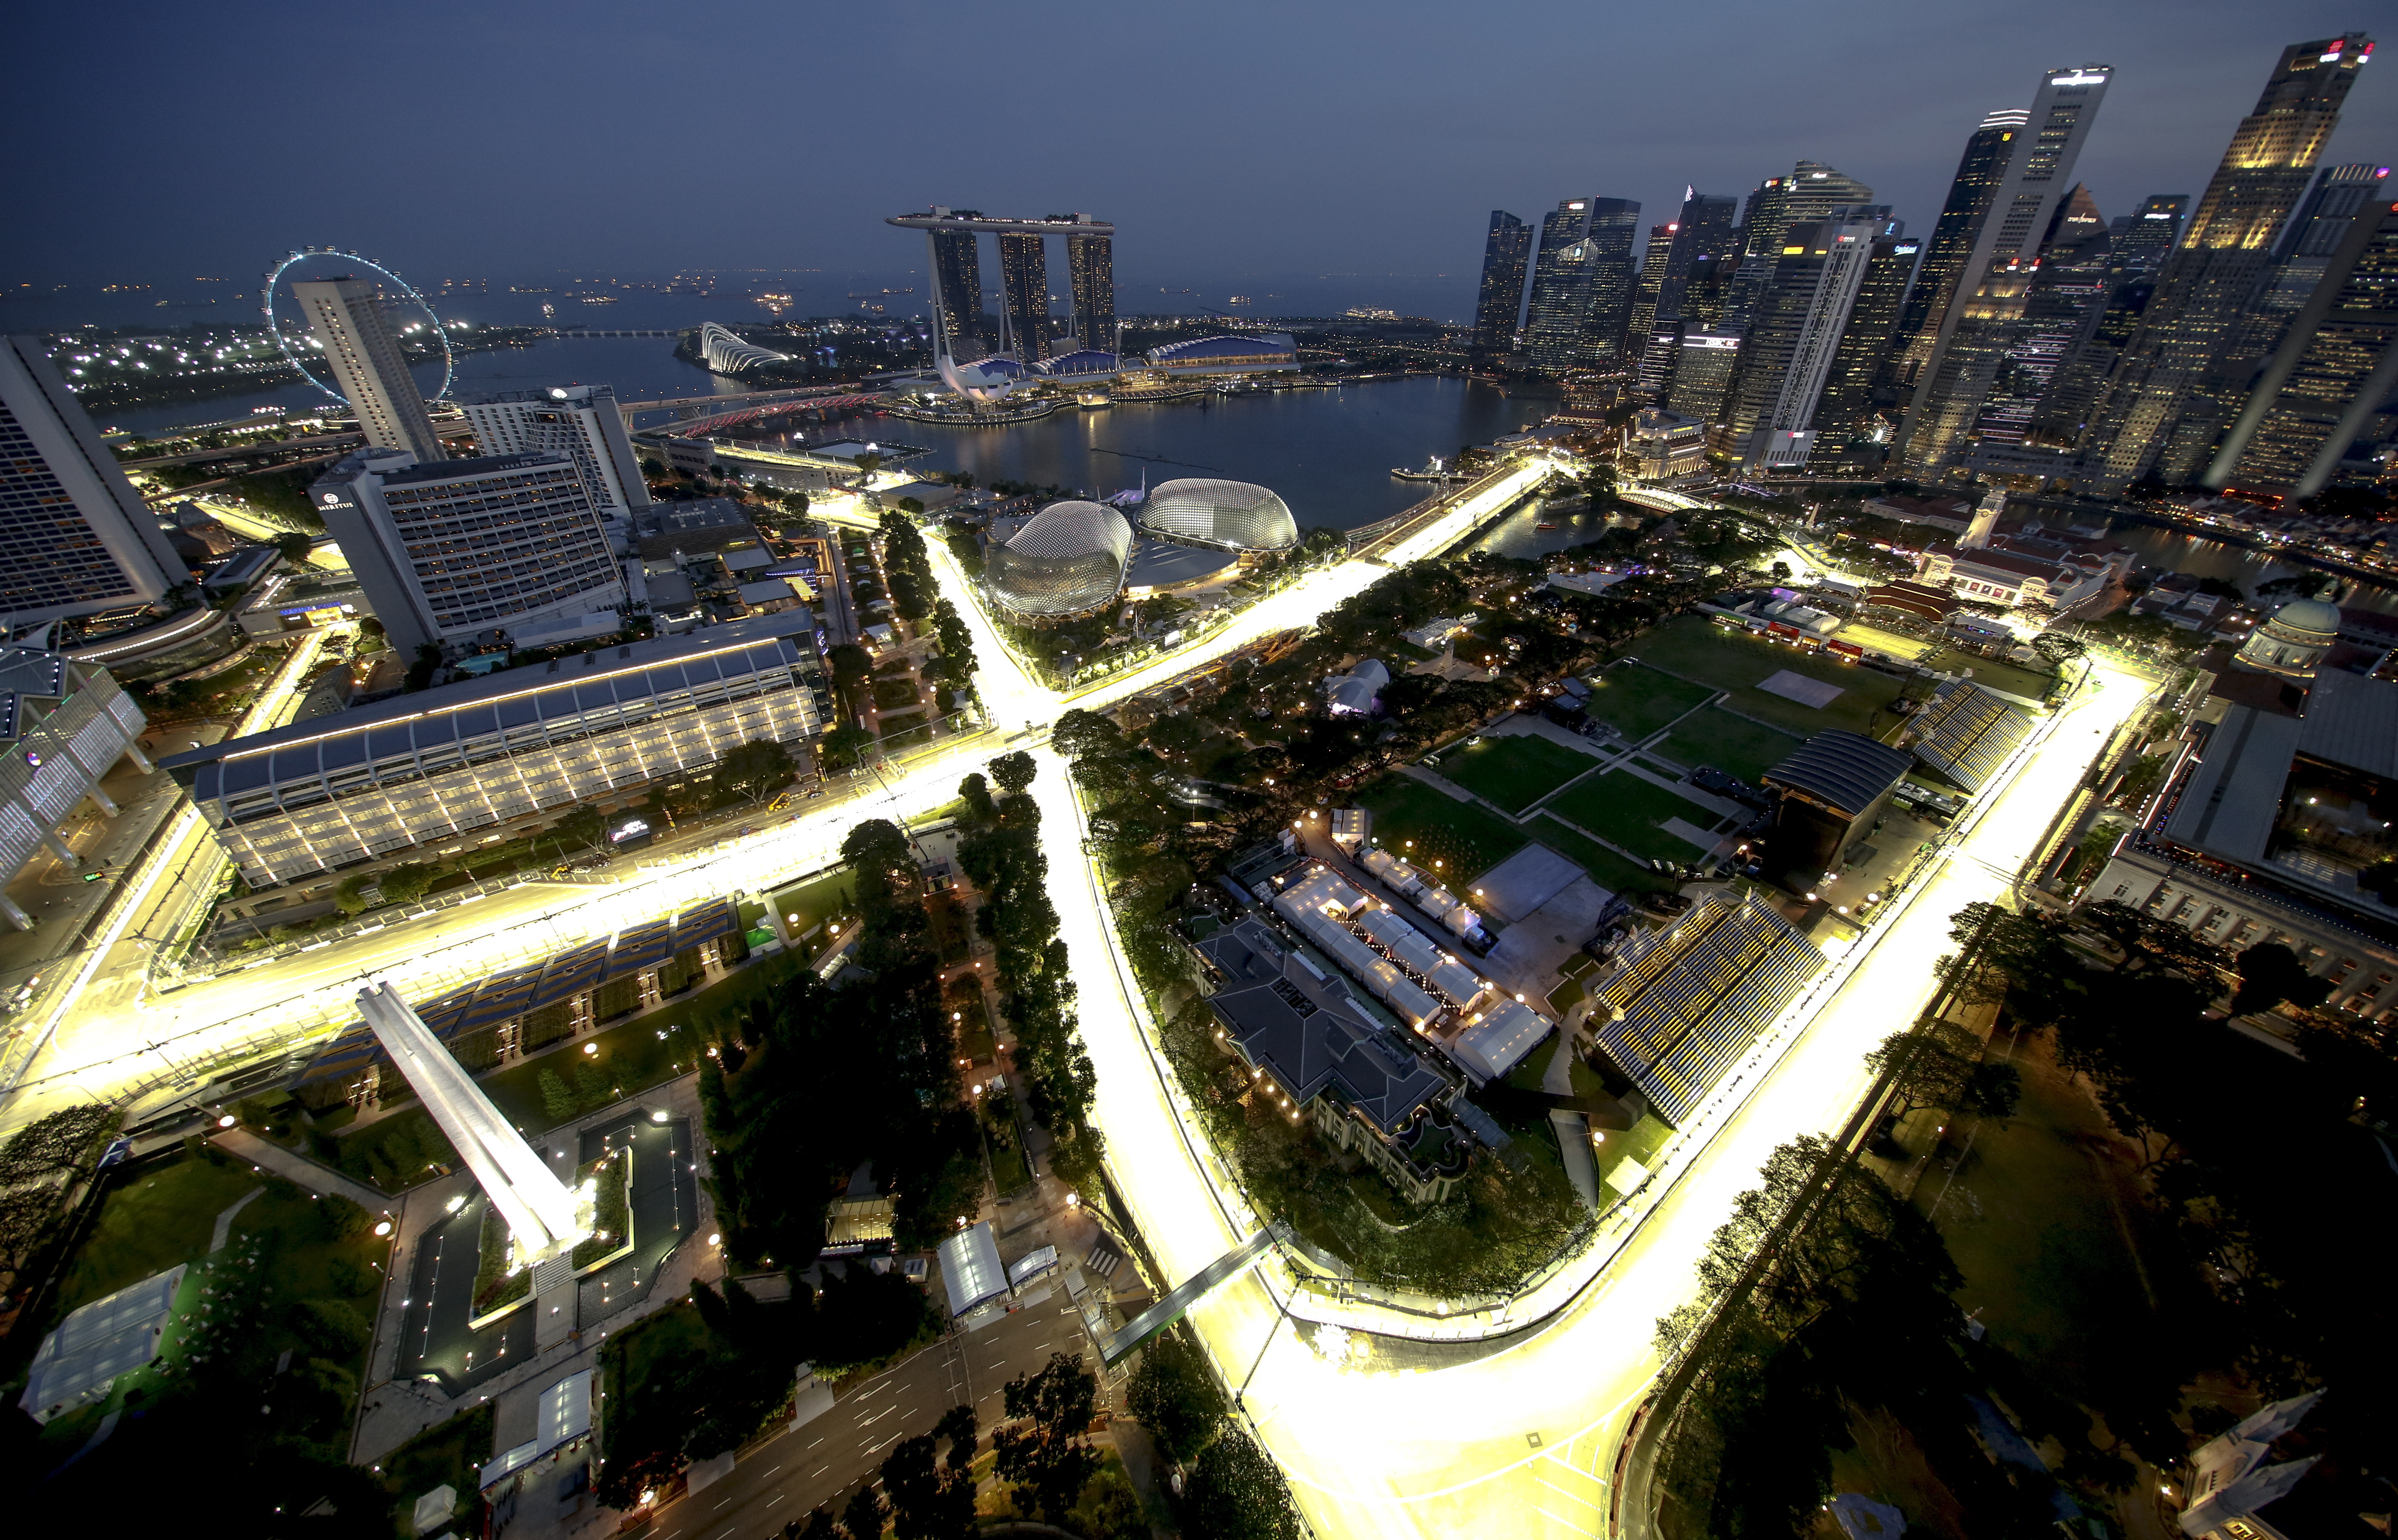 FORMULA 1 – Το Γκραν της Σιγκαπούρης στην ΕΡT Sports και στα διαδικτυακά Μέσα της ΕΡΤ